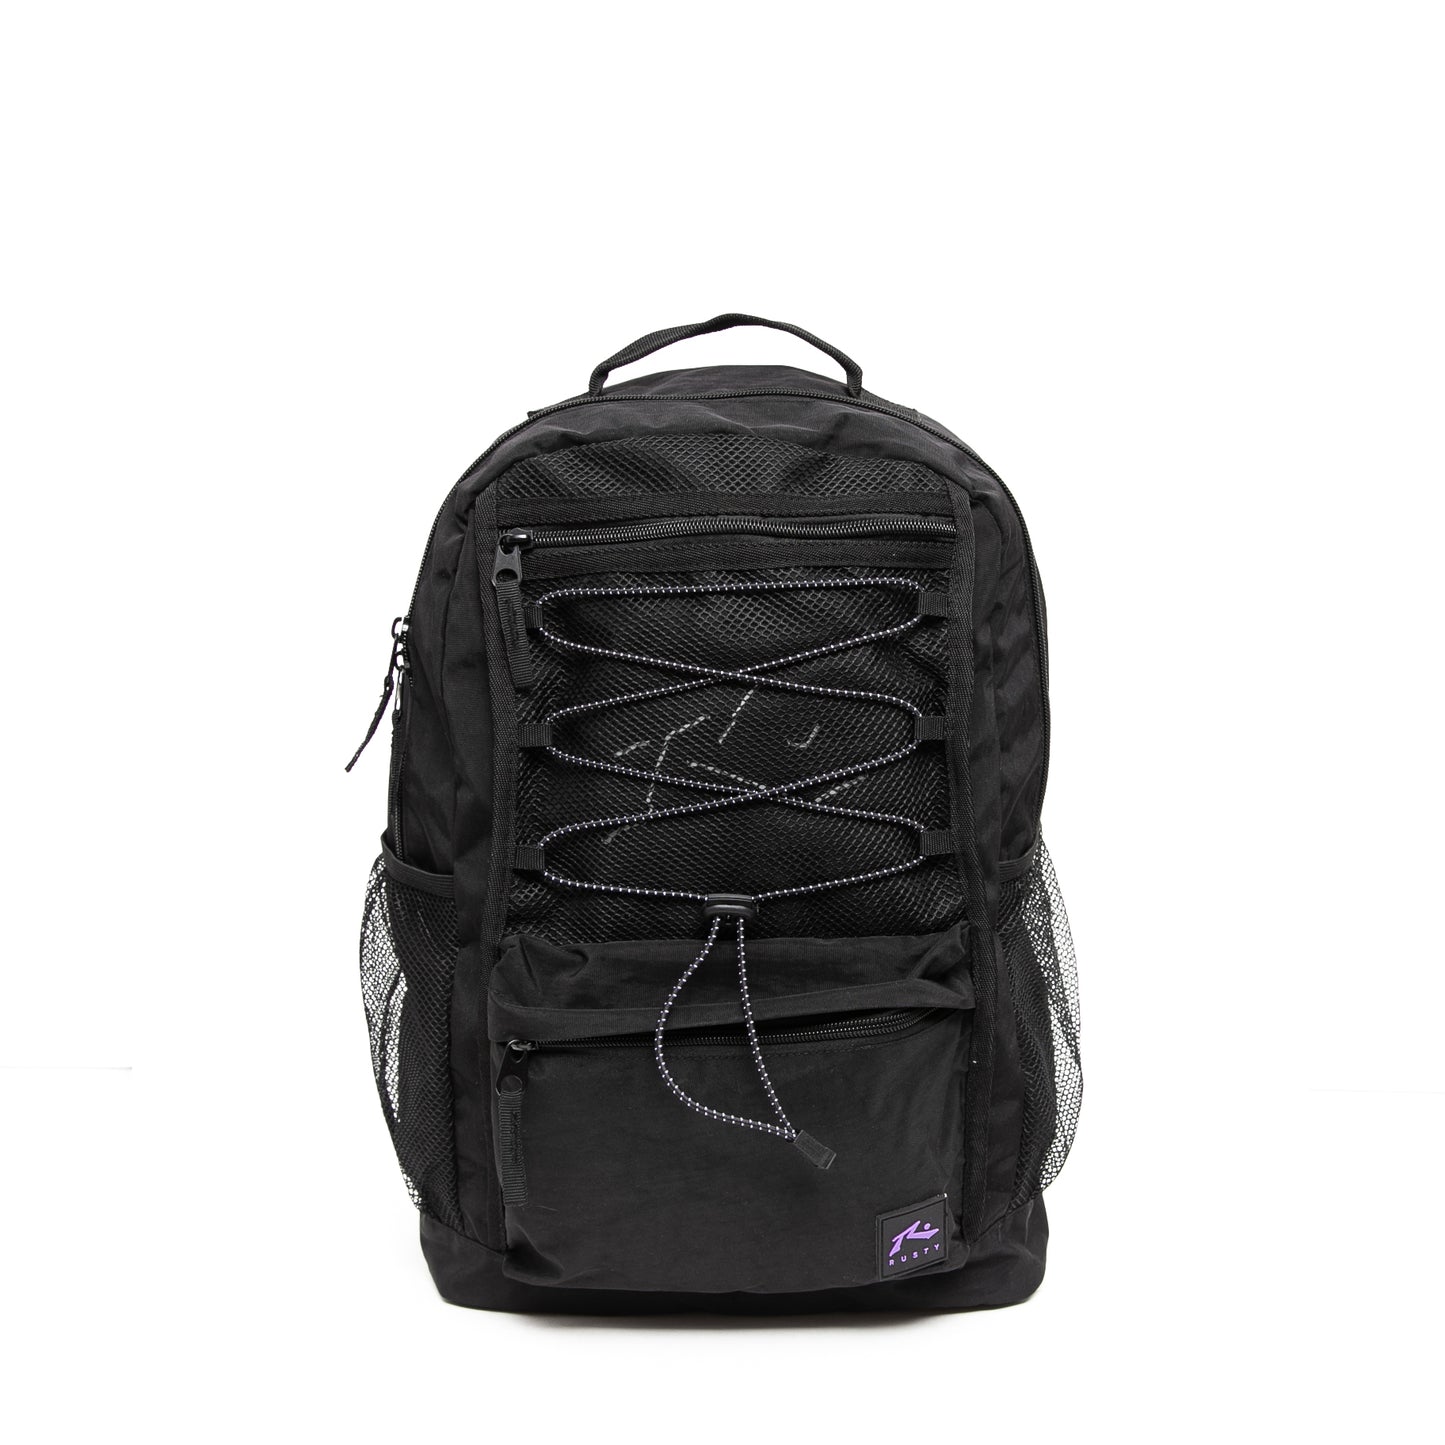 mochila_rusty_off_road_backpack_black_purple#YW#BLACK/PURPLE